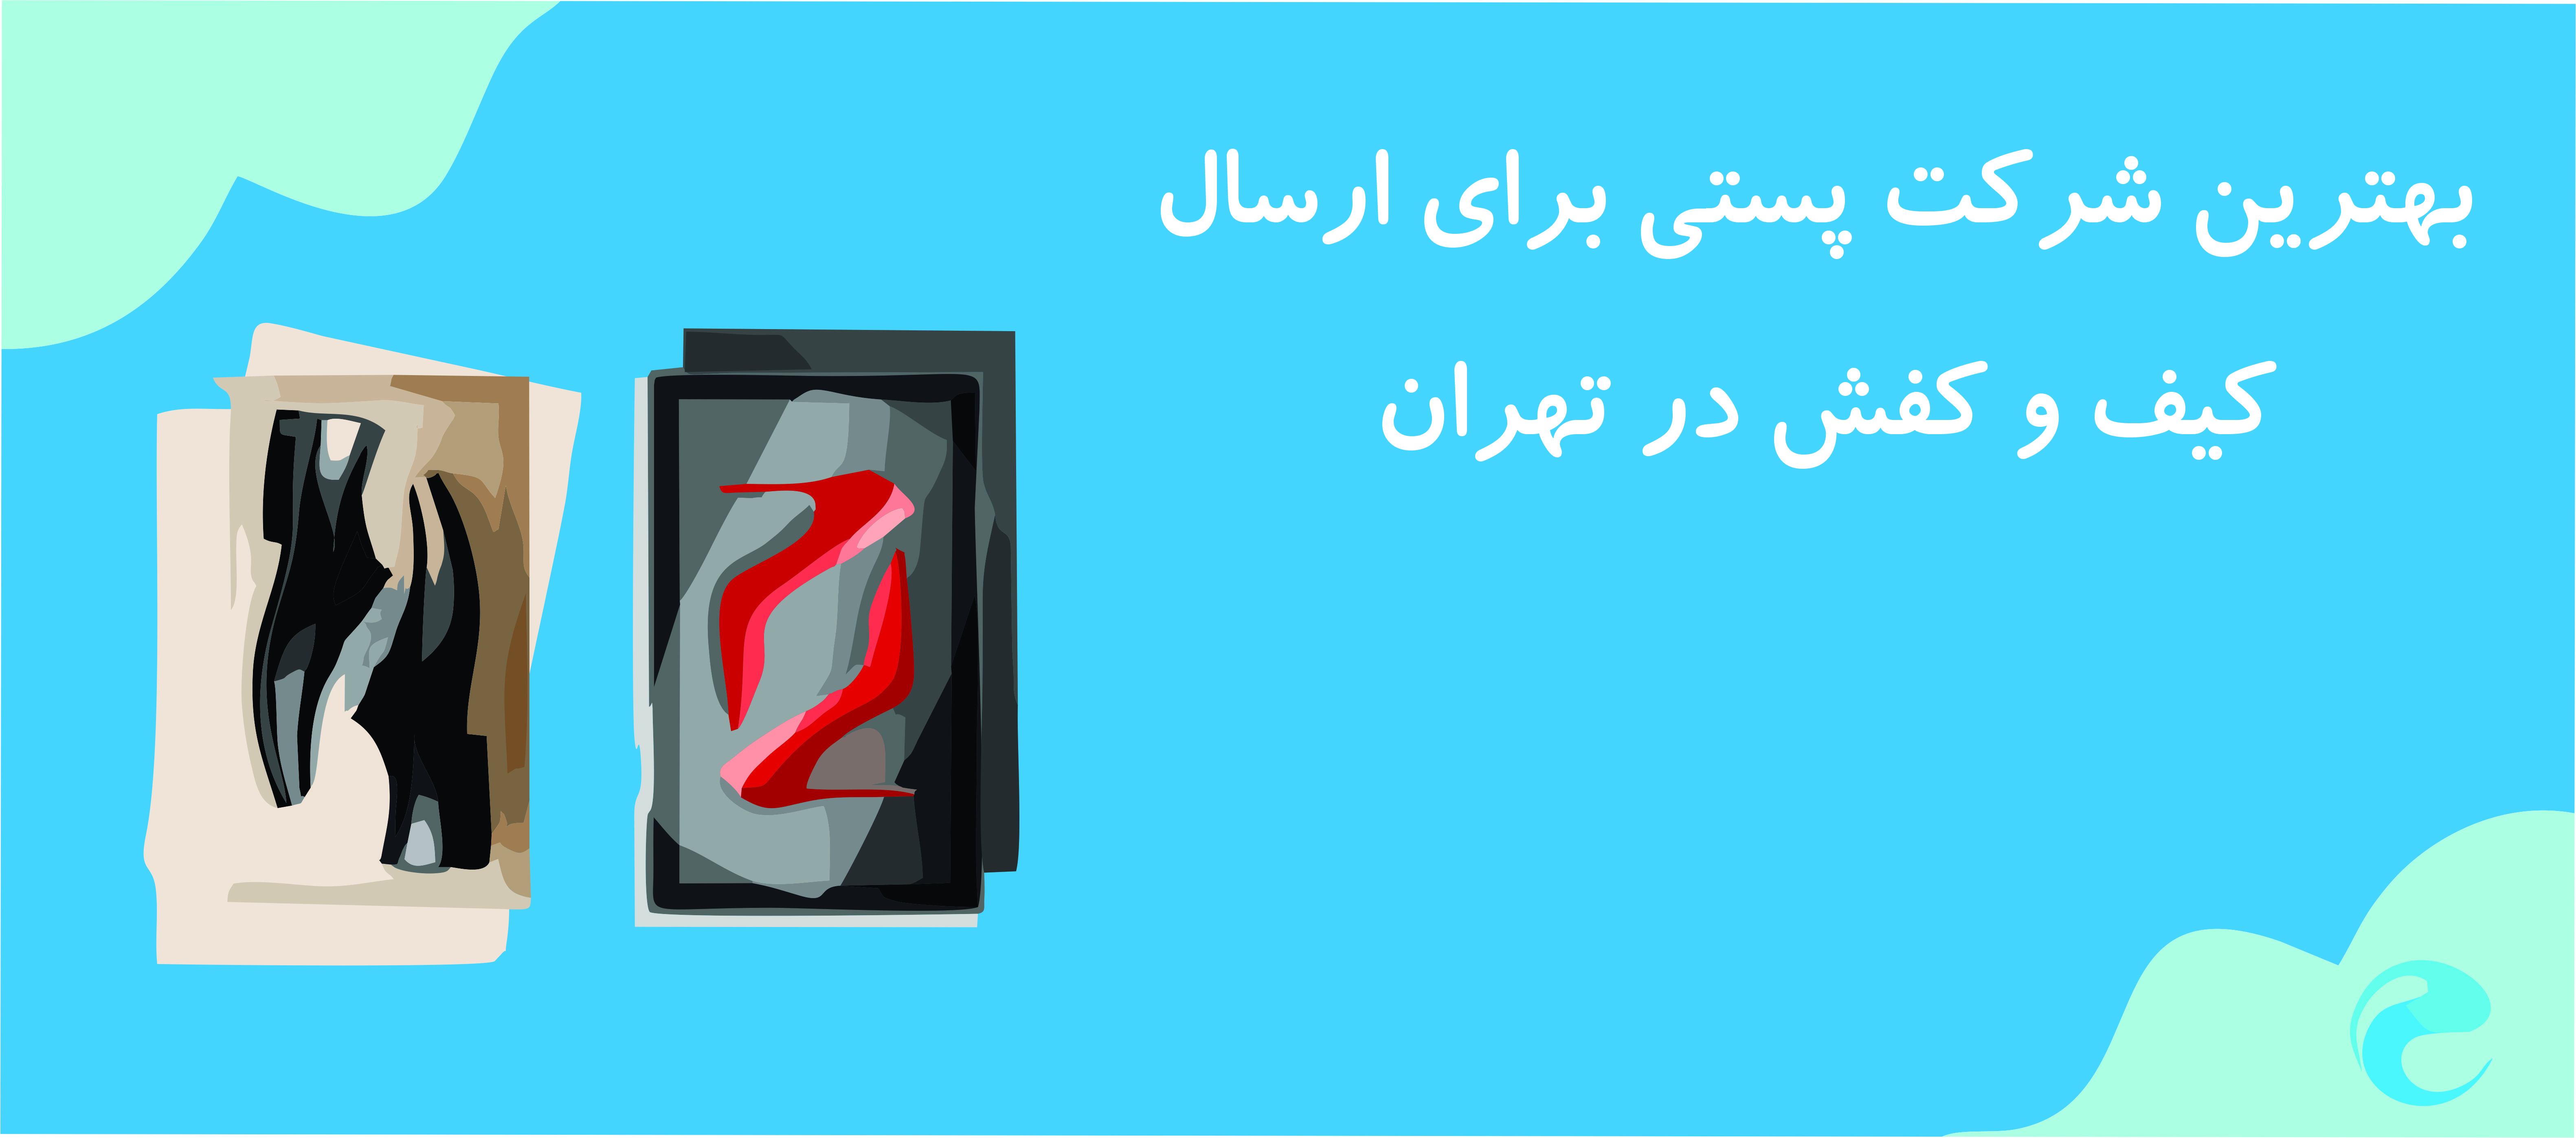 بهترین شرکت پستی برای ارسال کیف و کفش در تهران